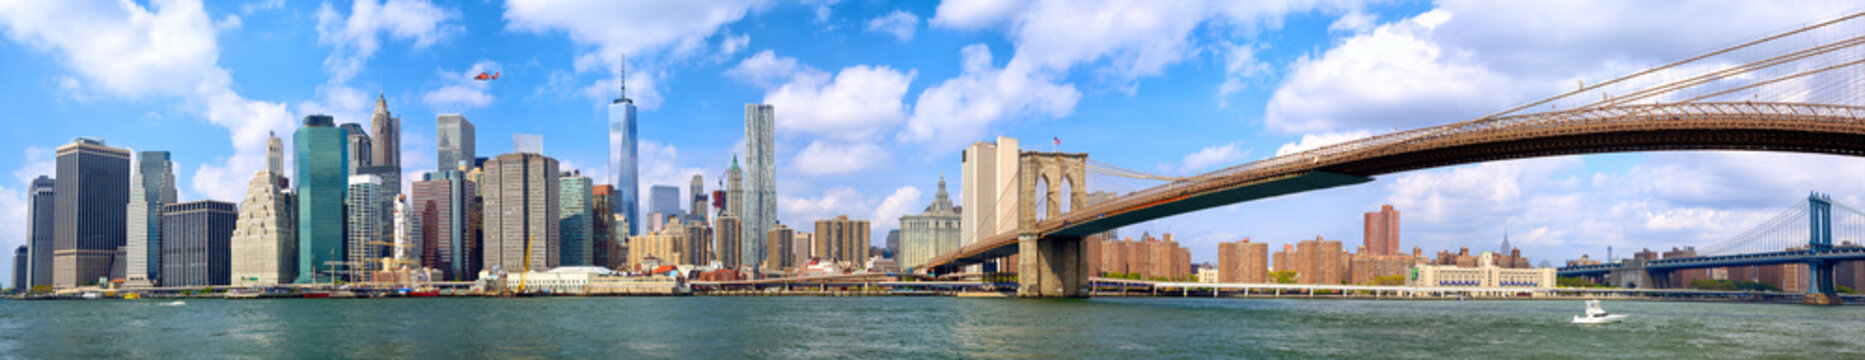 Fototapeta Manhattan skyline and Brooklyn Bridge panorama in New York